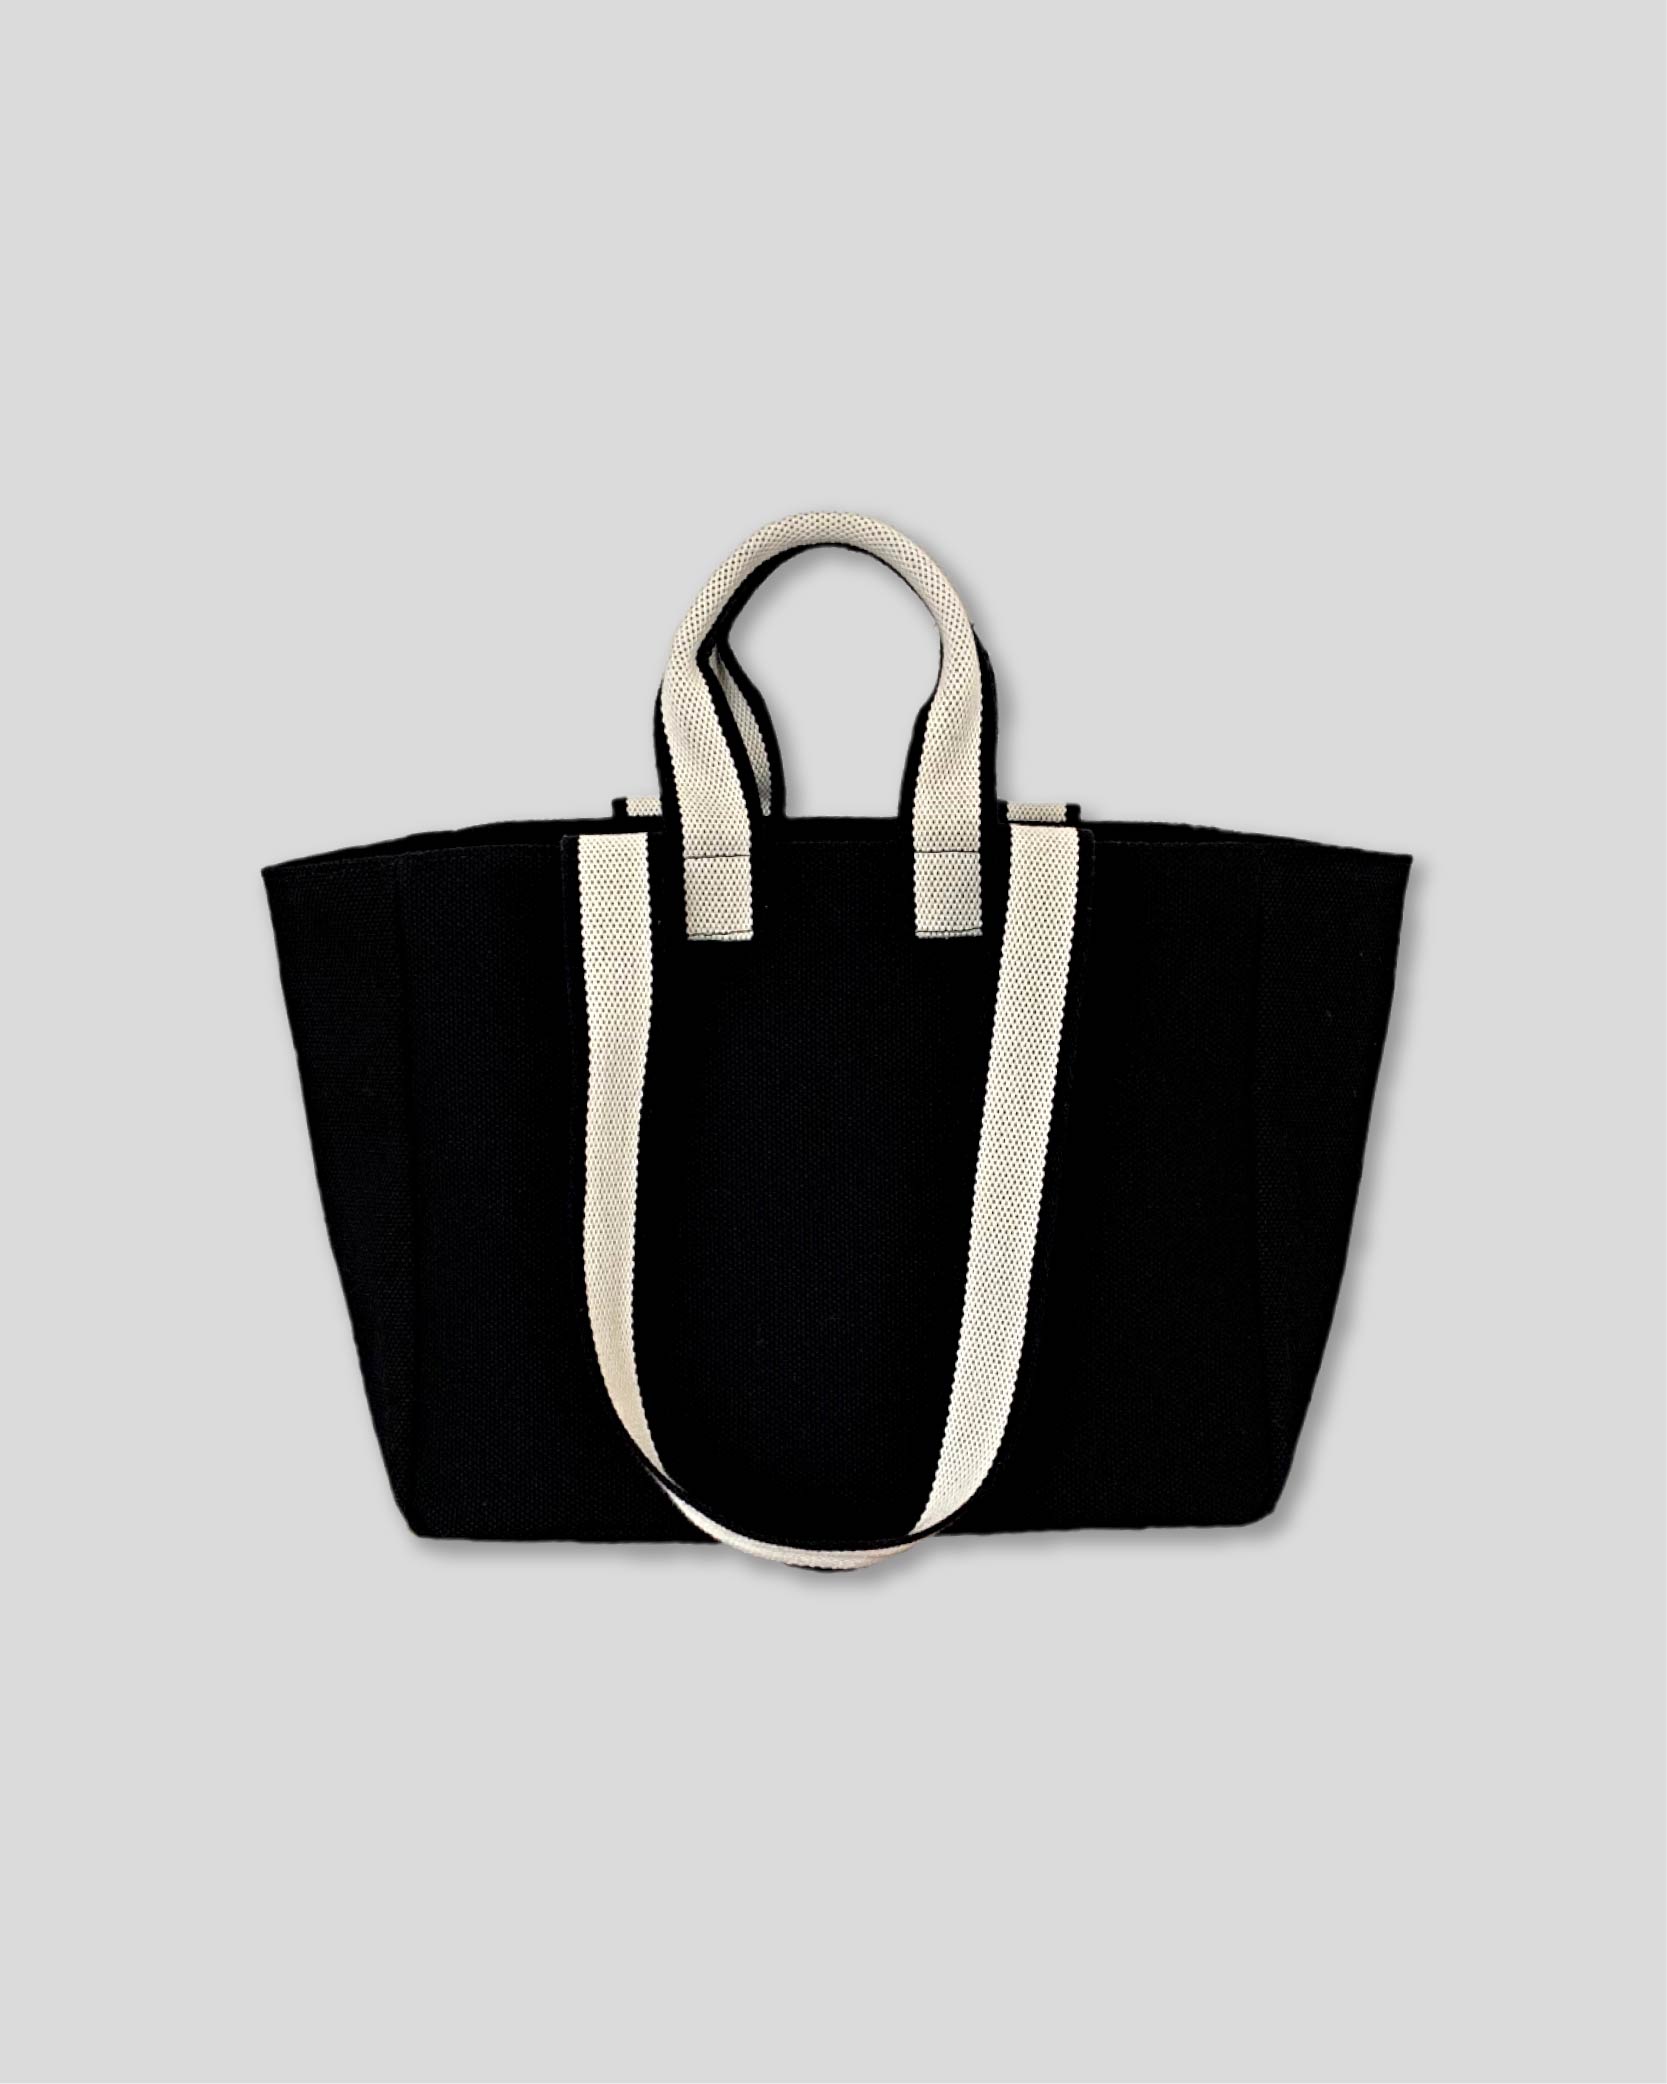 언폴드,unfold,에코백,파우치,천가방,친환경가방,[4/12 예약배송]  Two-tone strap bag (black)